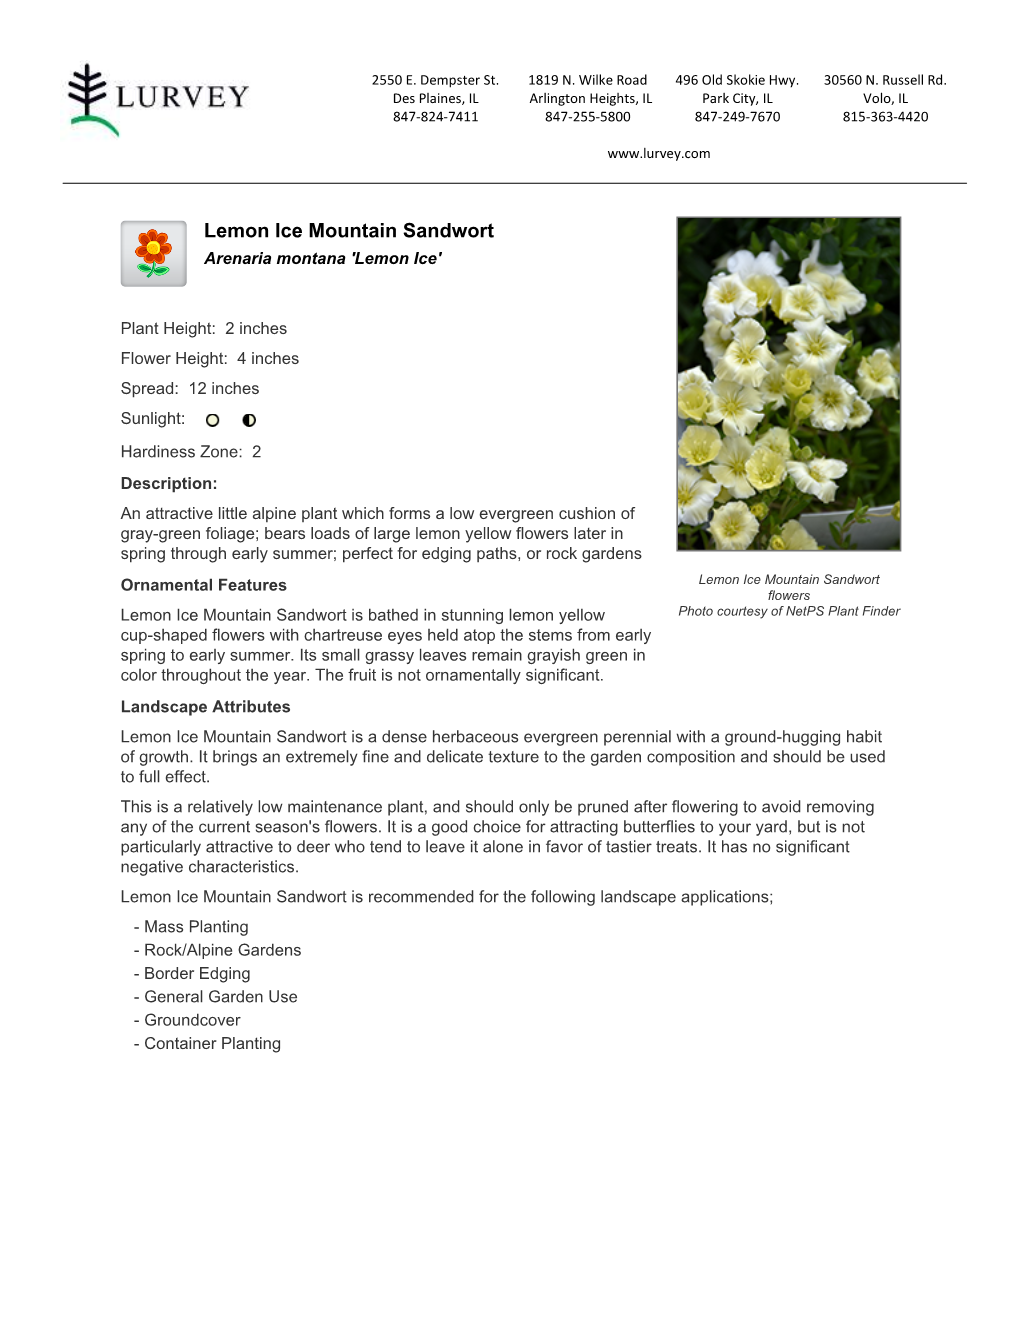 Lurvey Garden Center Lemon Ice Mountain Sandwort